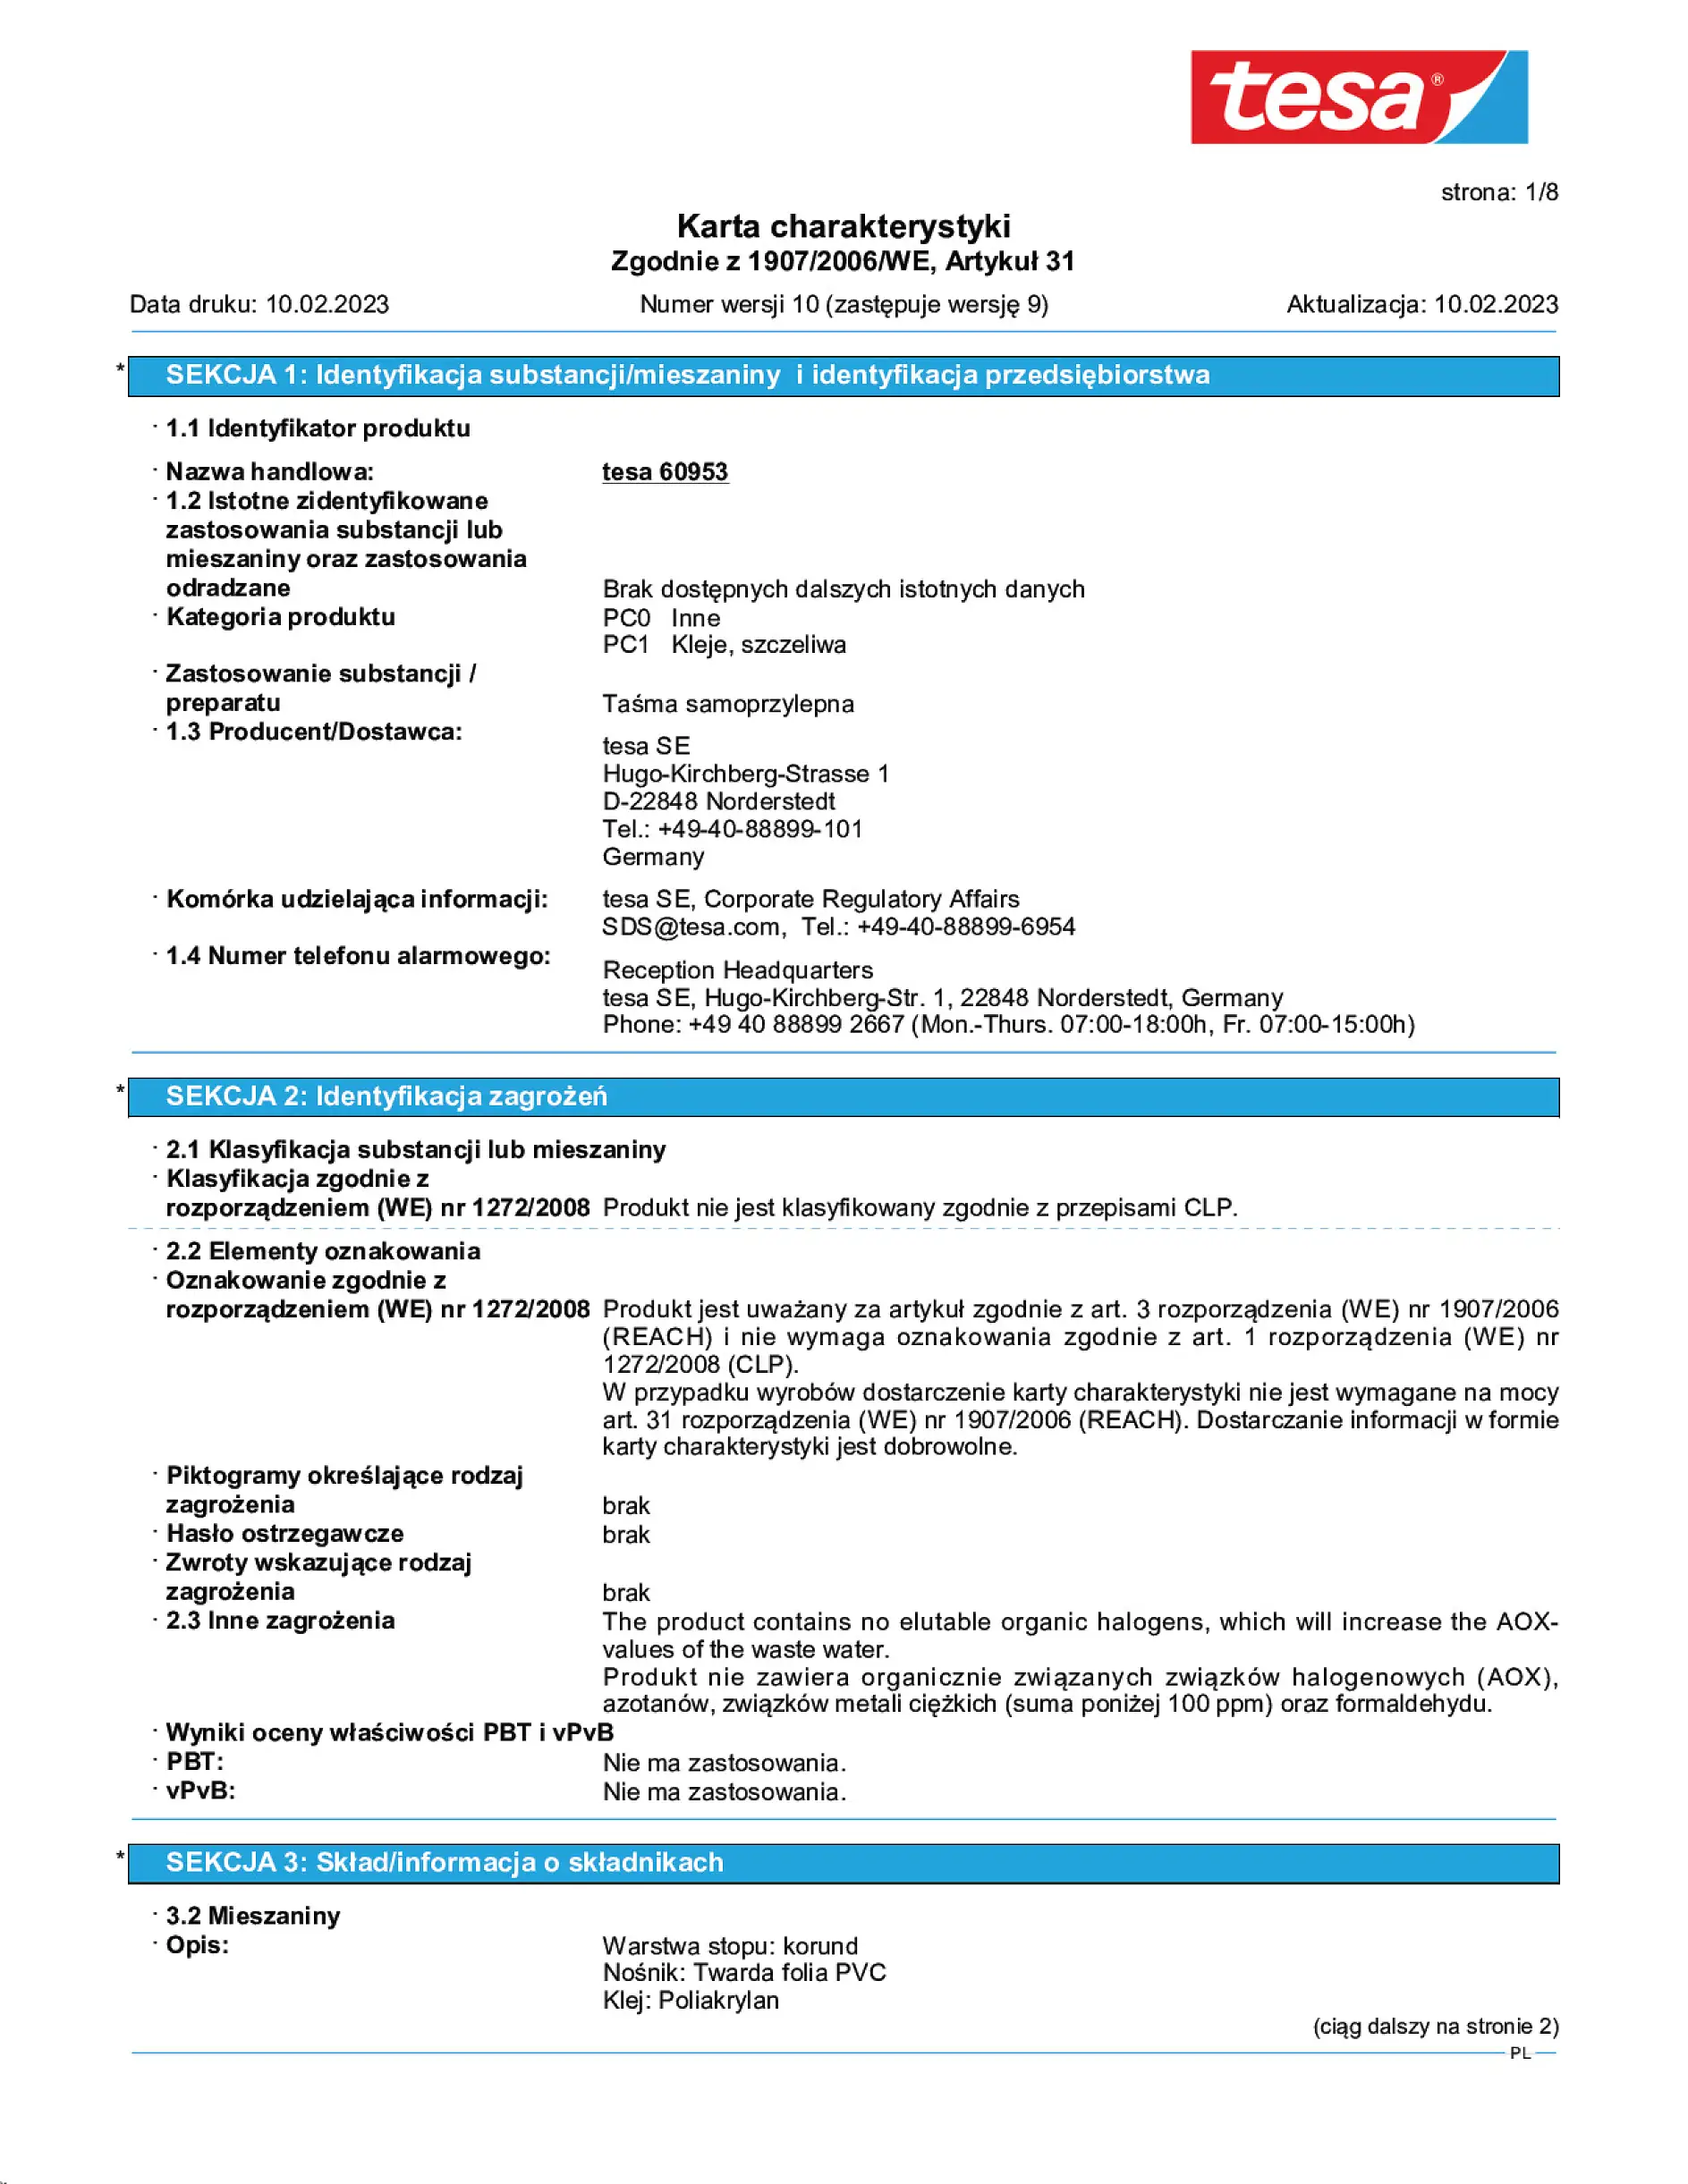 Safety data sheet_tesa® Professional 60953_pl-PL_v10